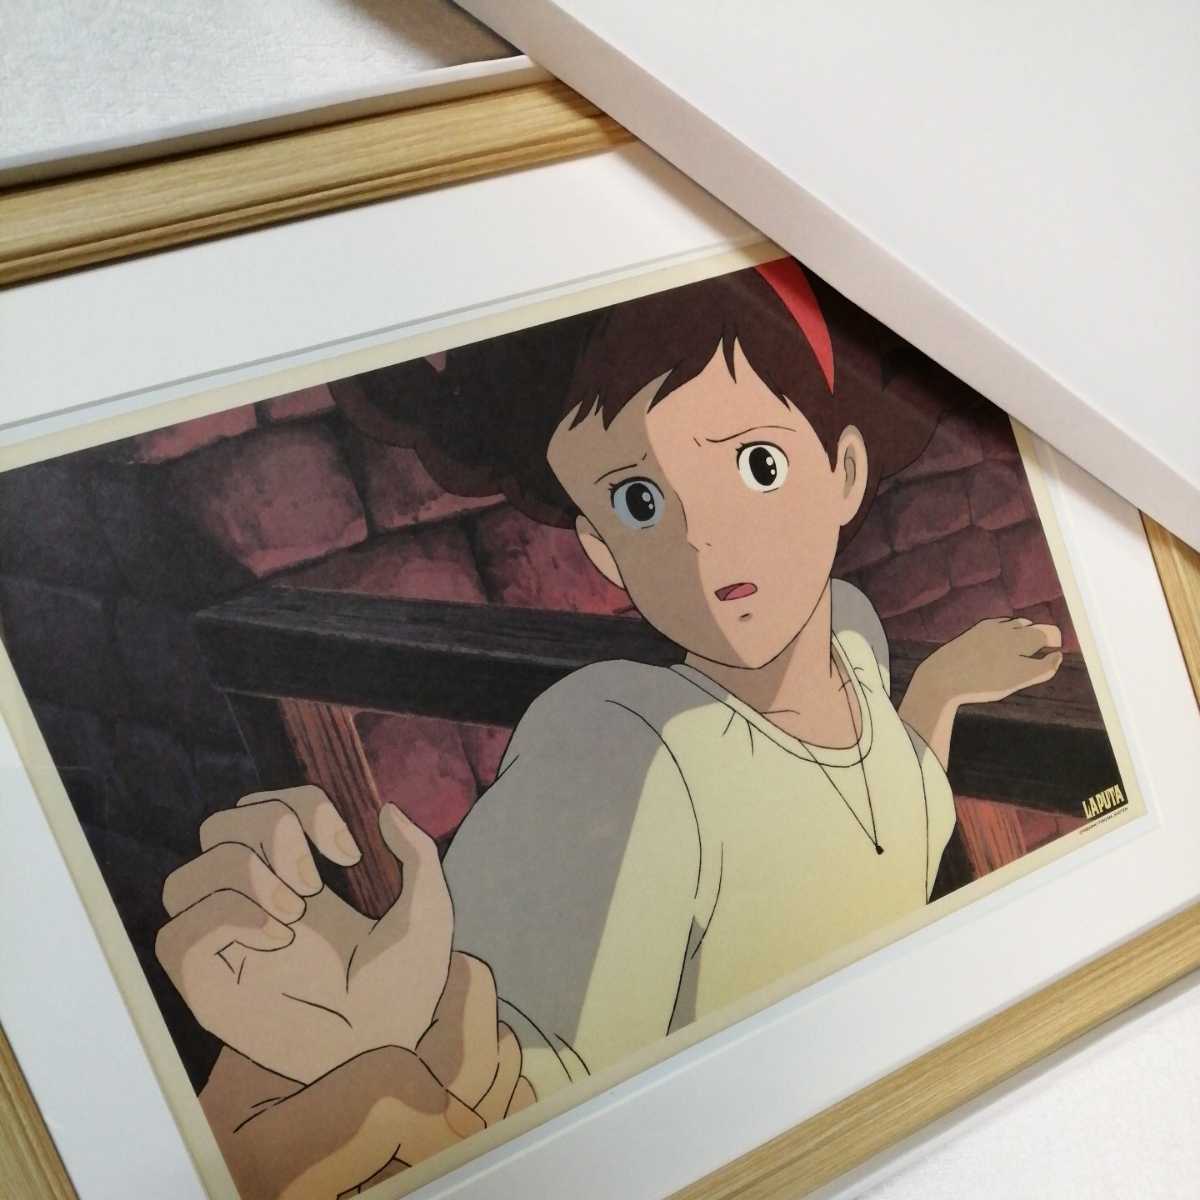 Il y a plus de 30 ans [À cette époque] Studio Ghibli : Château dans le ciel [Objet encadré] Poster, peinture murale, reproduction originale, inspection) cellule, carte postale, Hayao Miyazaki un, des bandes dessinées, produits d'anime, autres